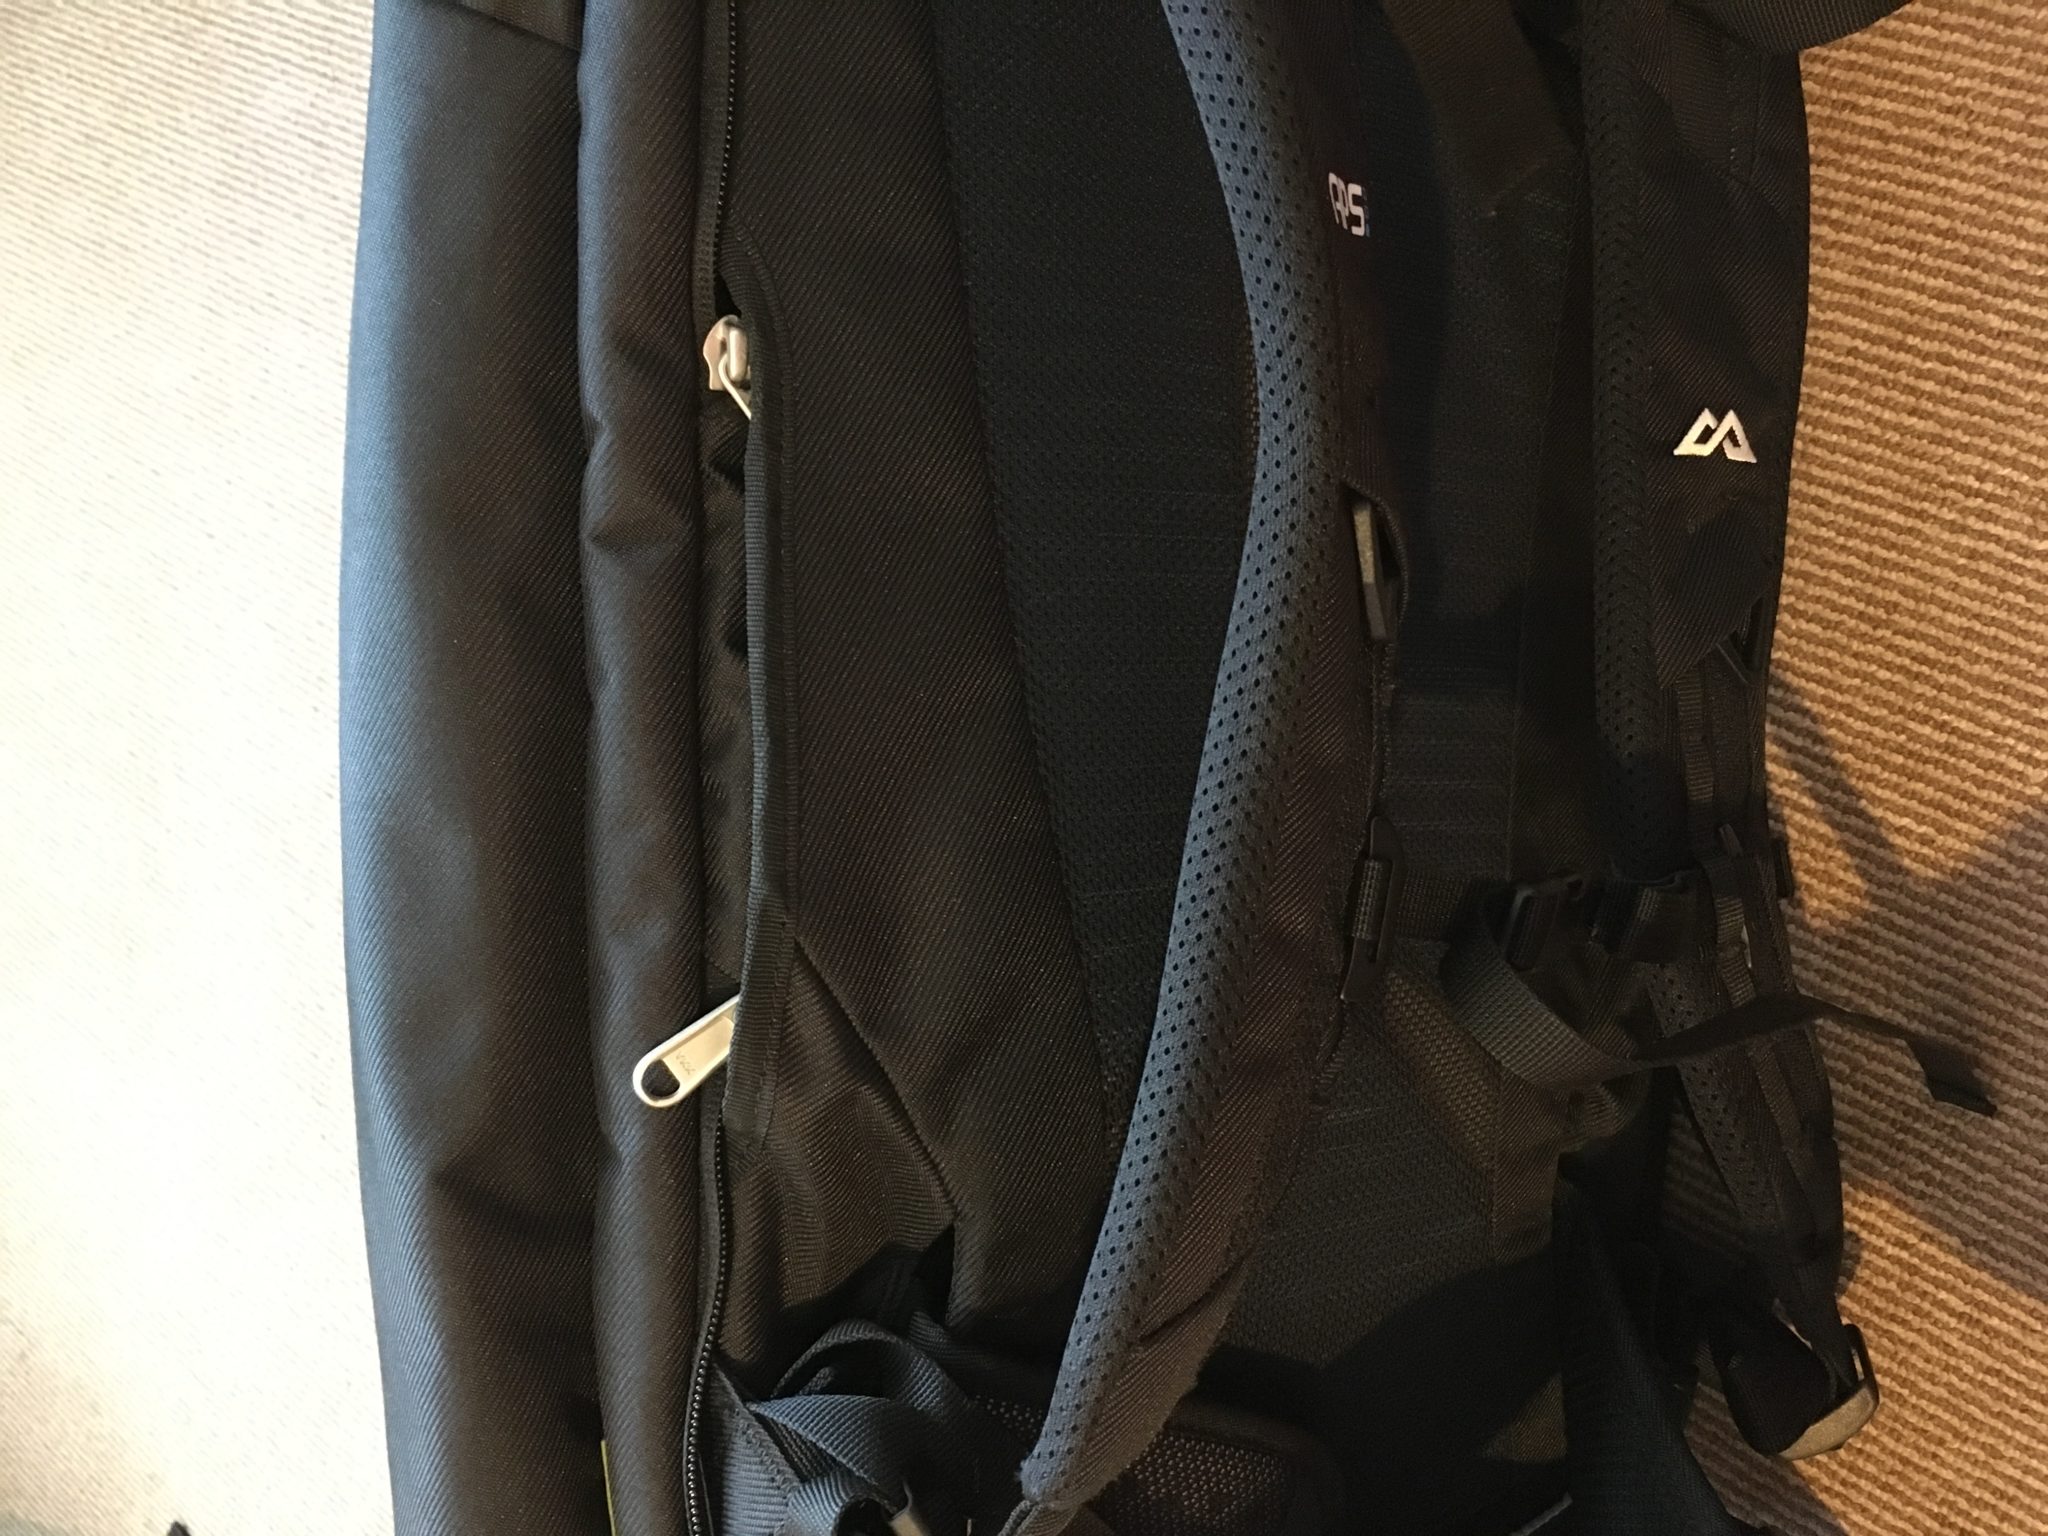 The strap cover pocket on the side of a black Kathmandu Litehaul 38L Backpack